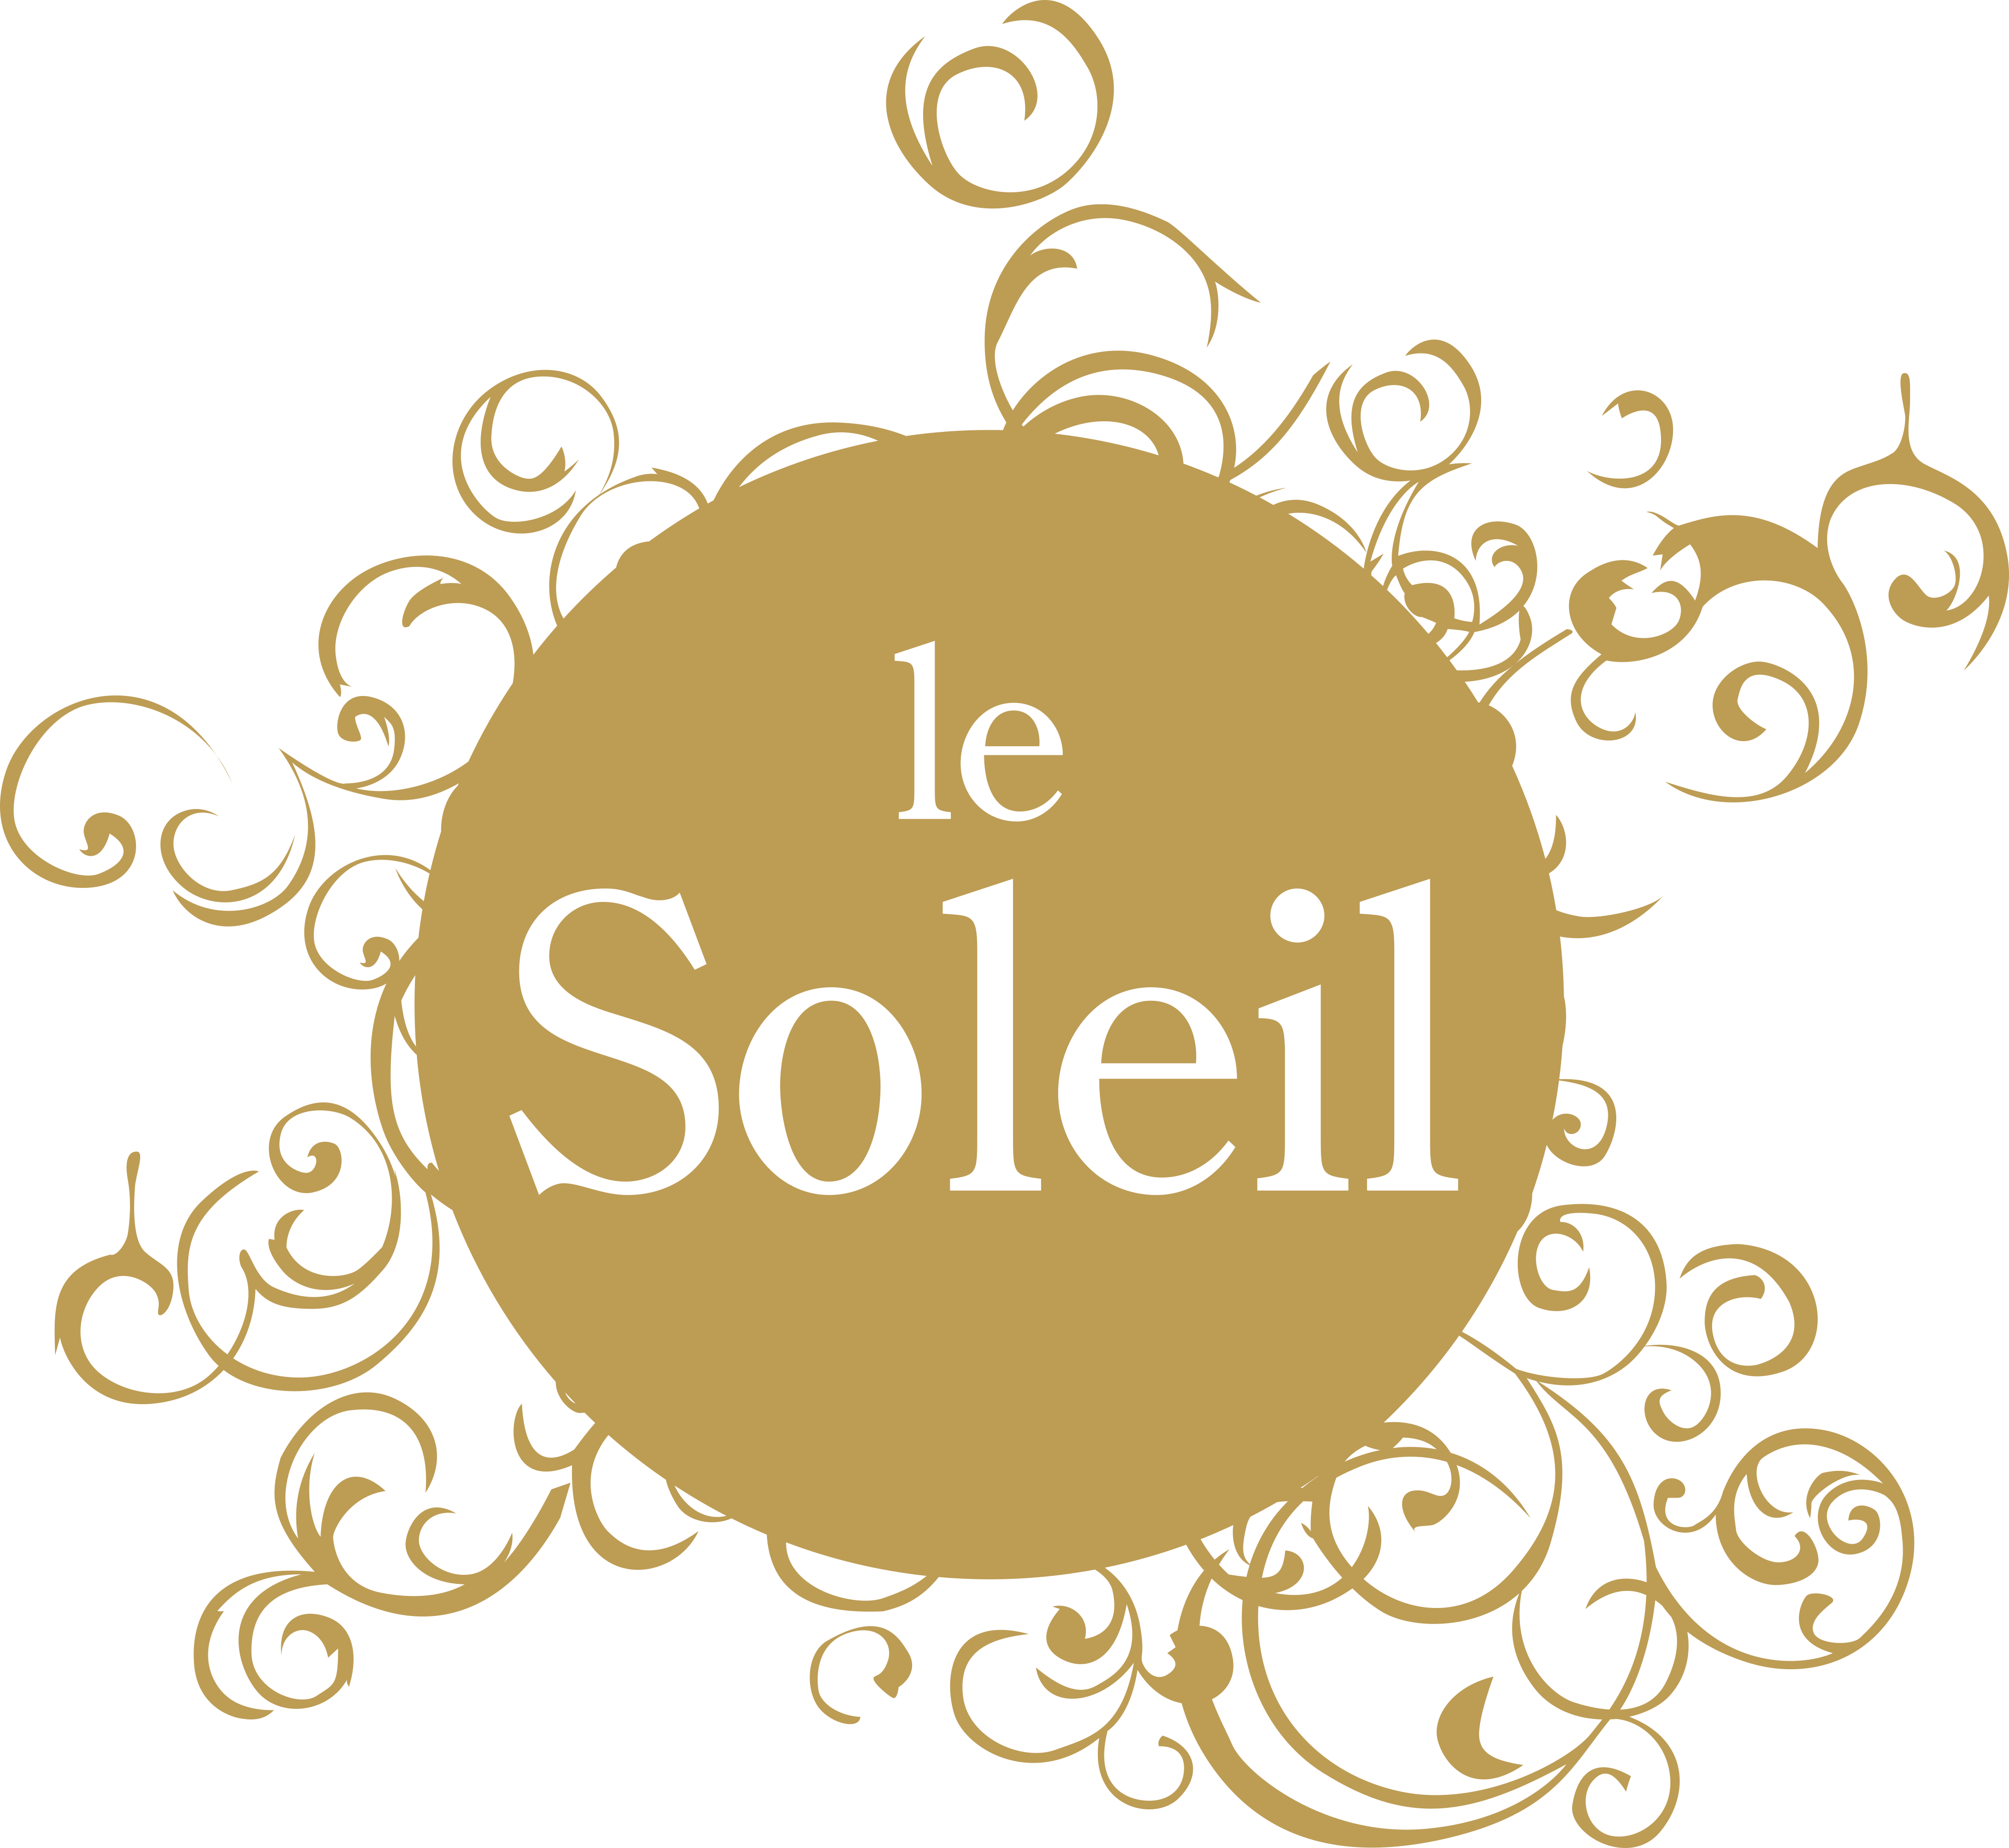 Le Soleil logo - download.